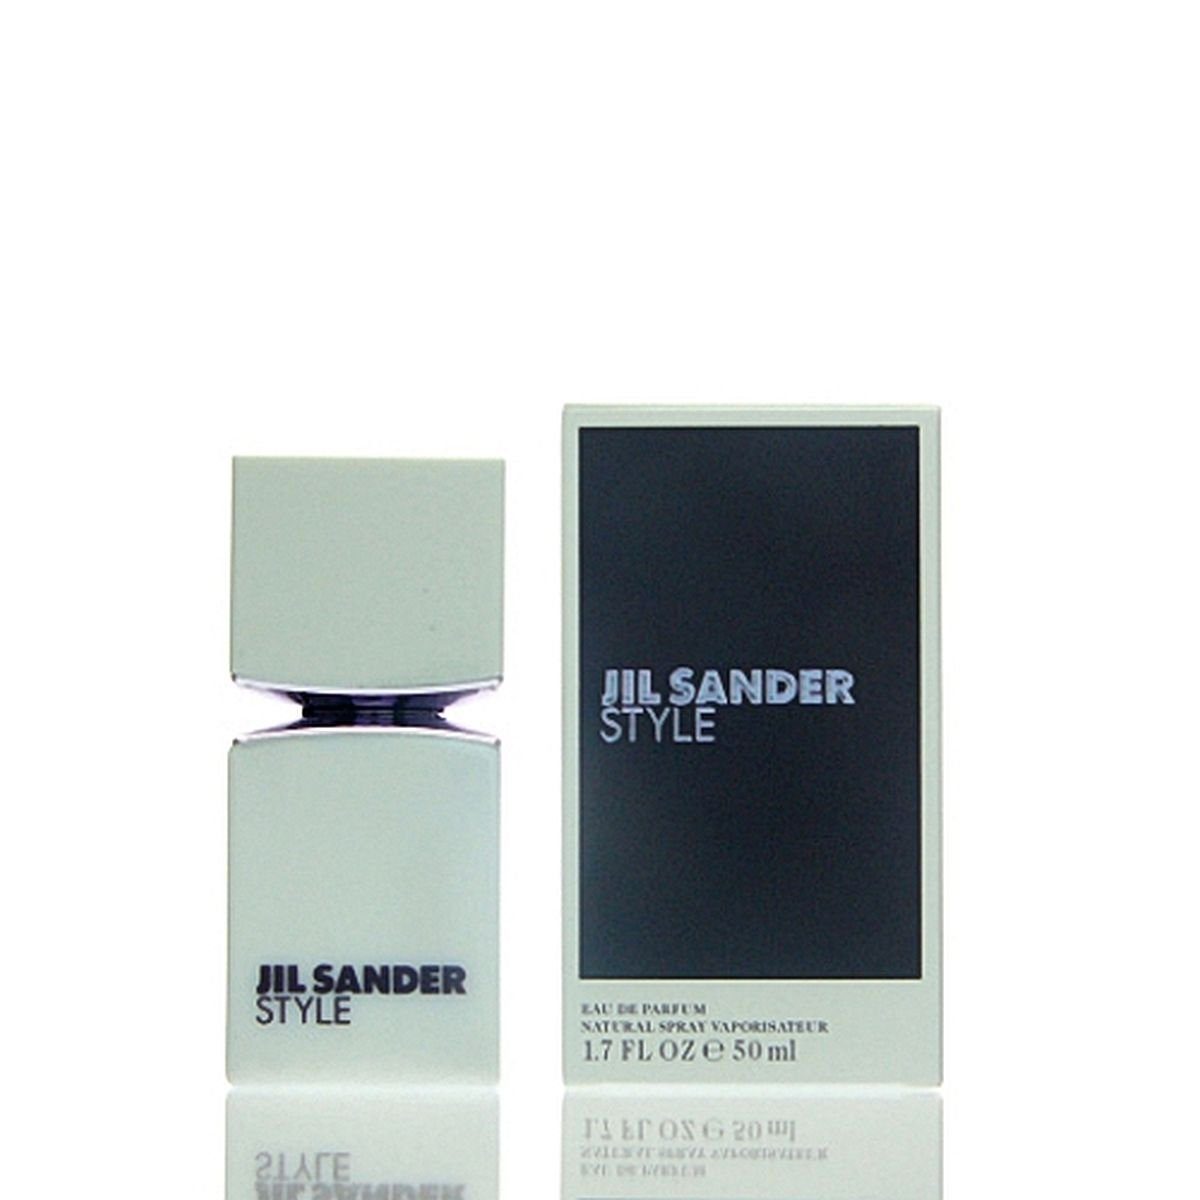 50 Jil SANDER Style Sander de Eau de Eau ml JIL Parfum Parfum